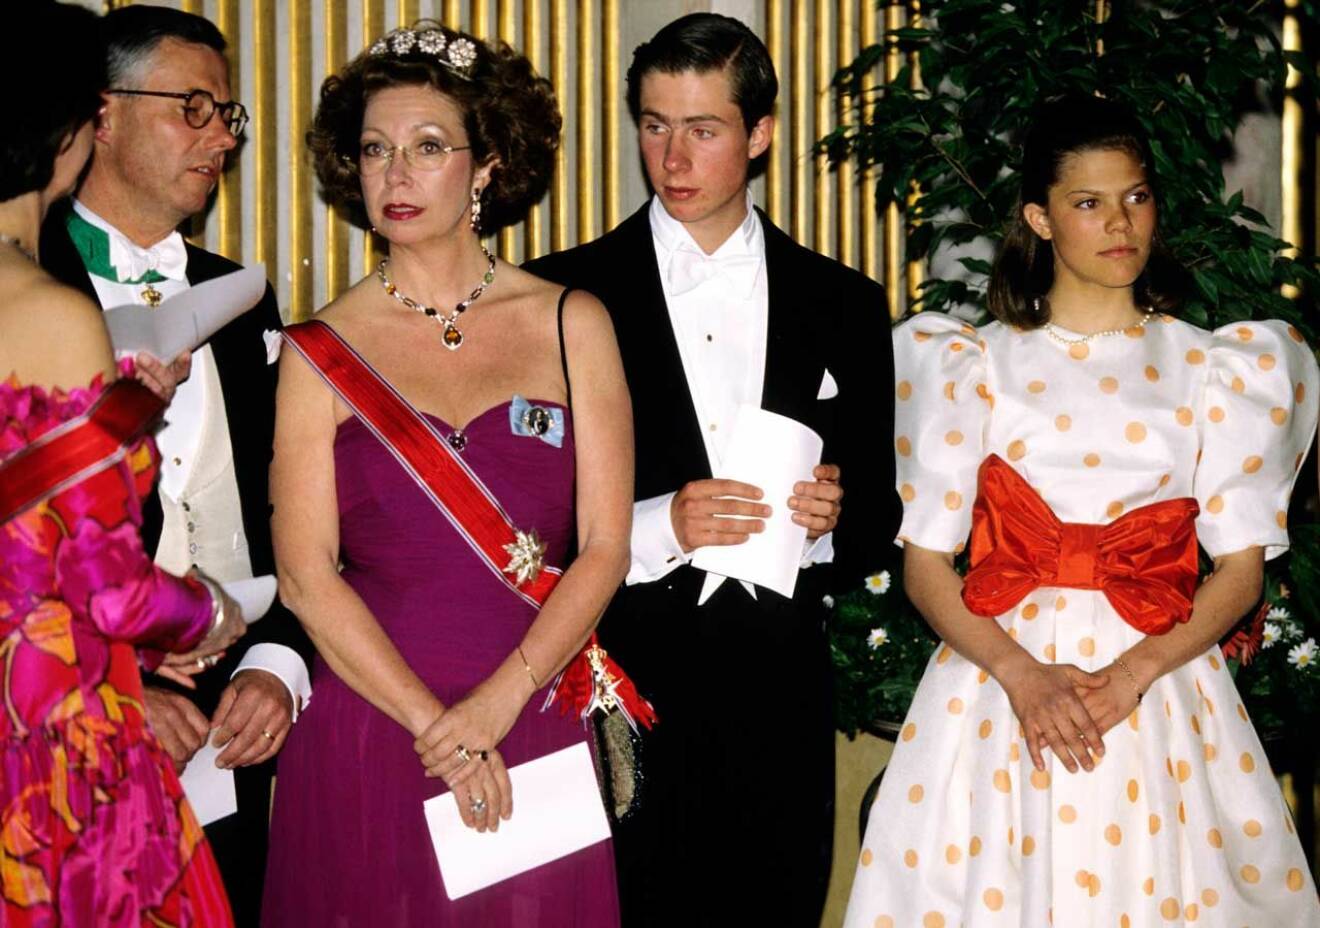 Kronprinsessan Victoria i prickig klänning och jätterosett på sin första galamiddag 1992.